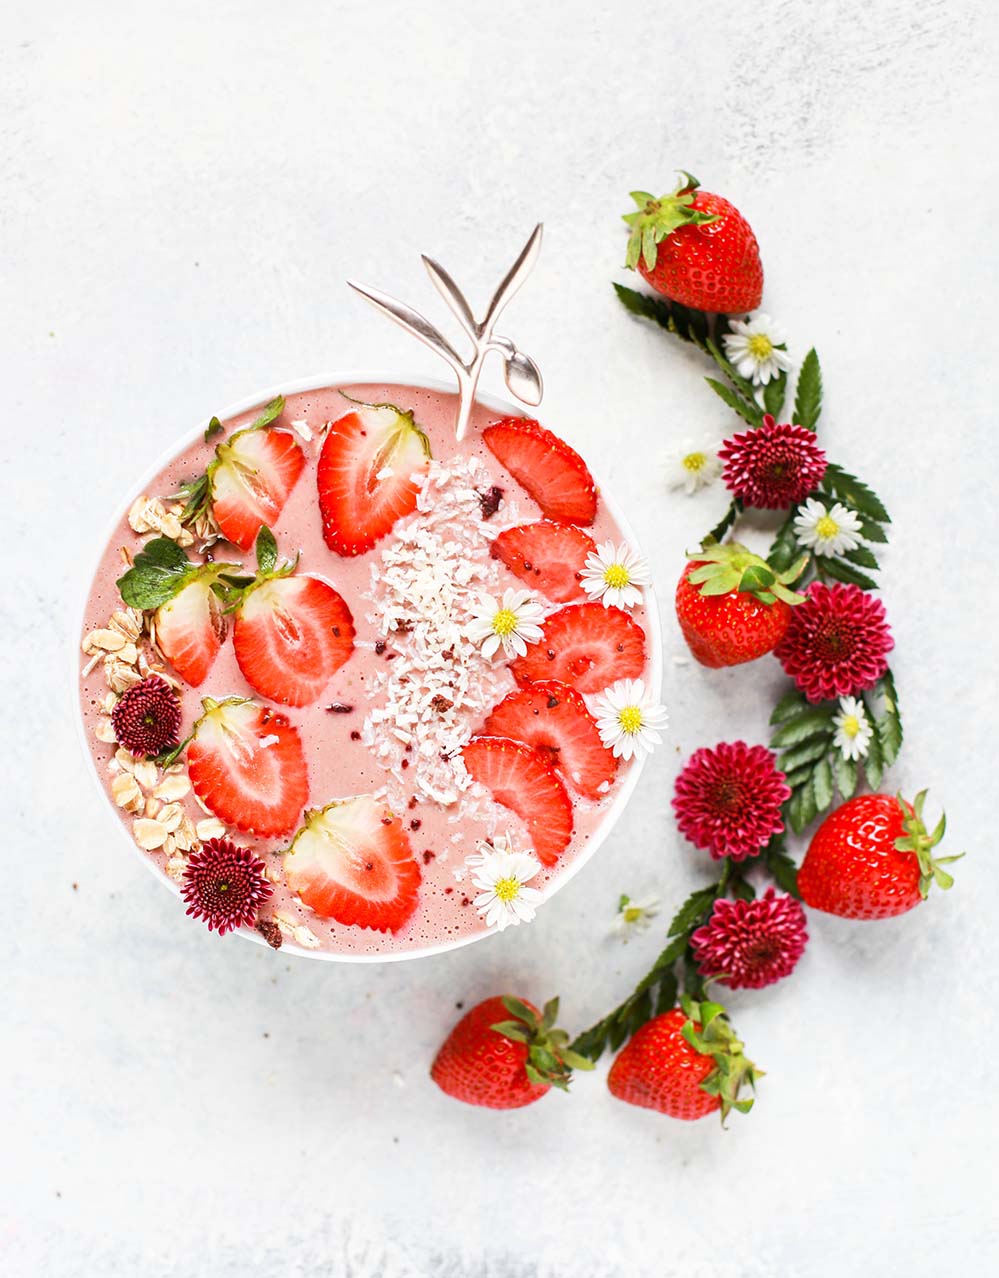 一碗草莓冰沙pretty-strawberry-smoothie-bowl